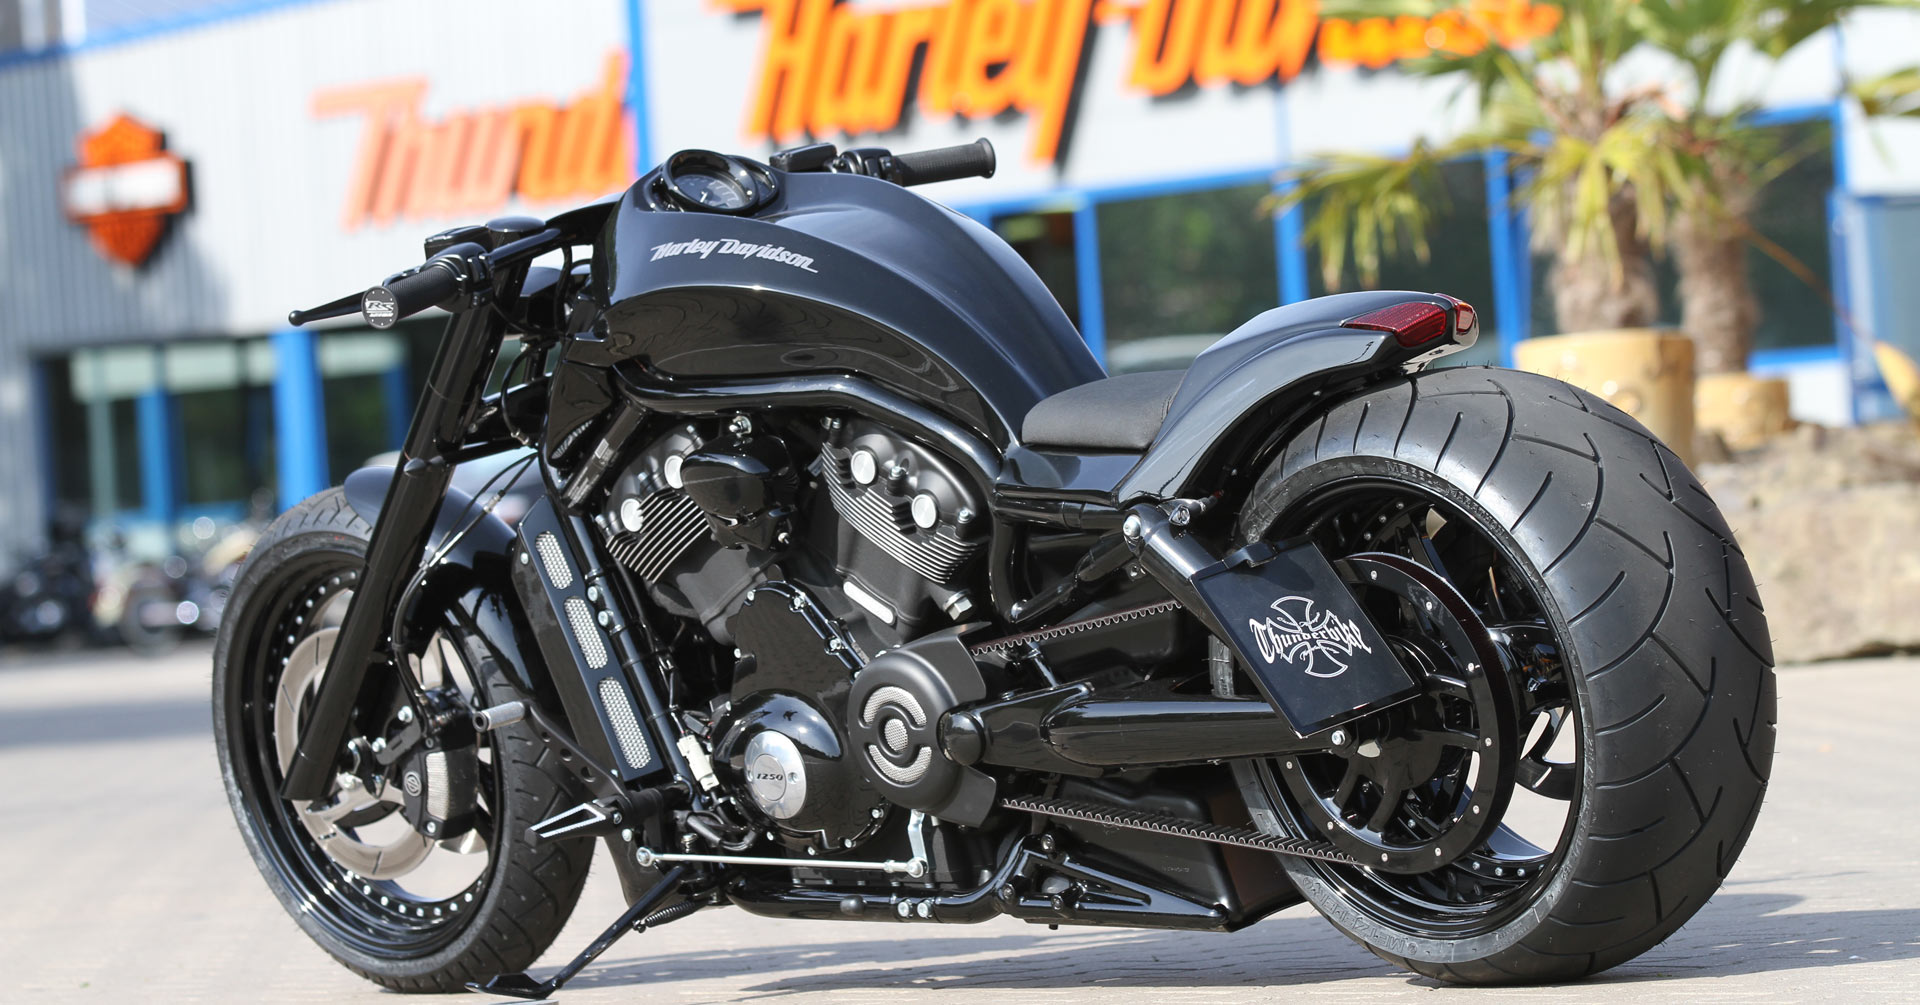 Customized Harley Davidson V Rod Vrsc Motorcycles By Thunderbike